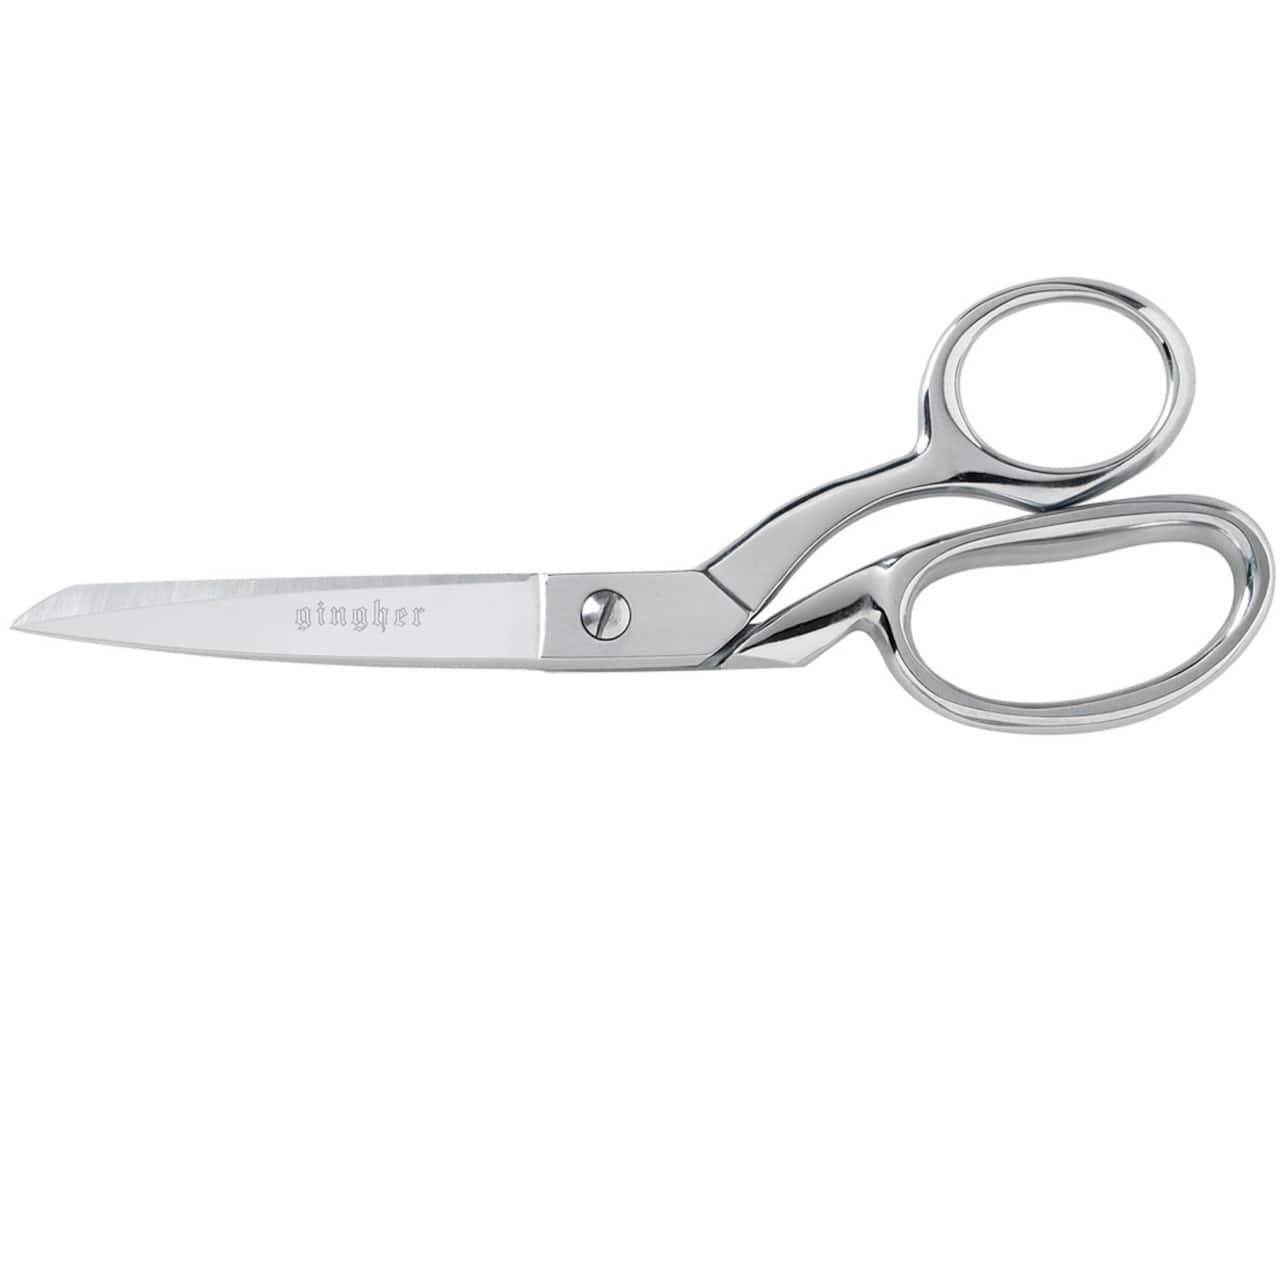 Gingher® Knife-Edge Dressmaker Shears